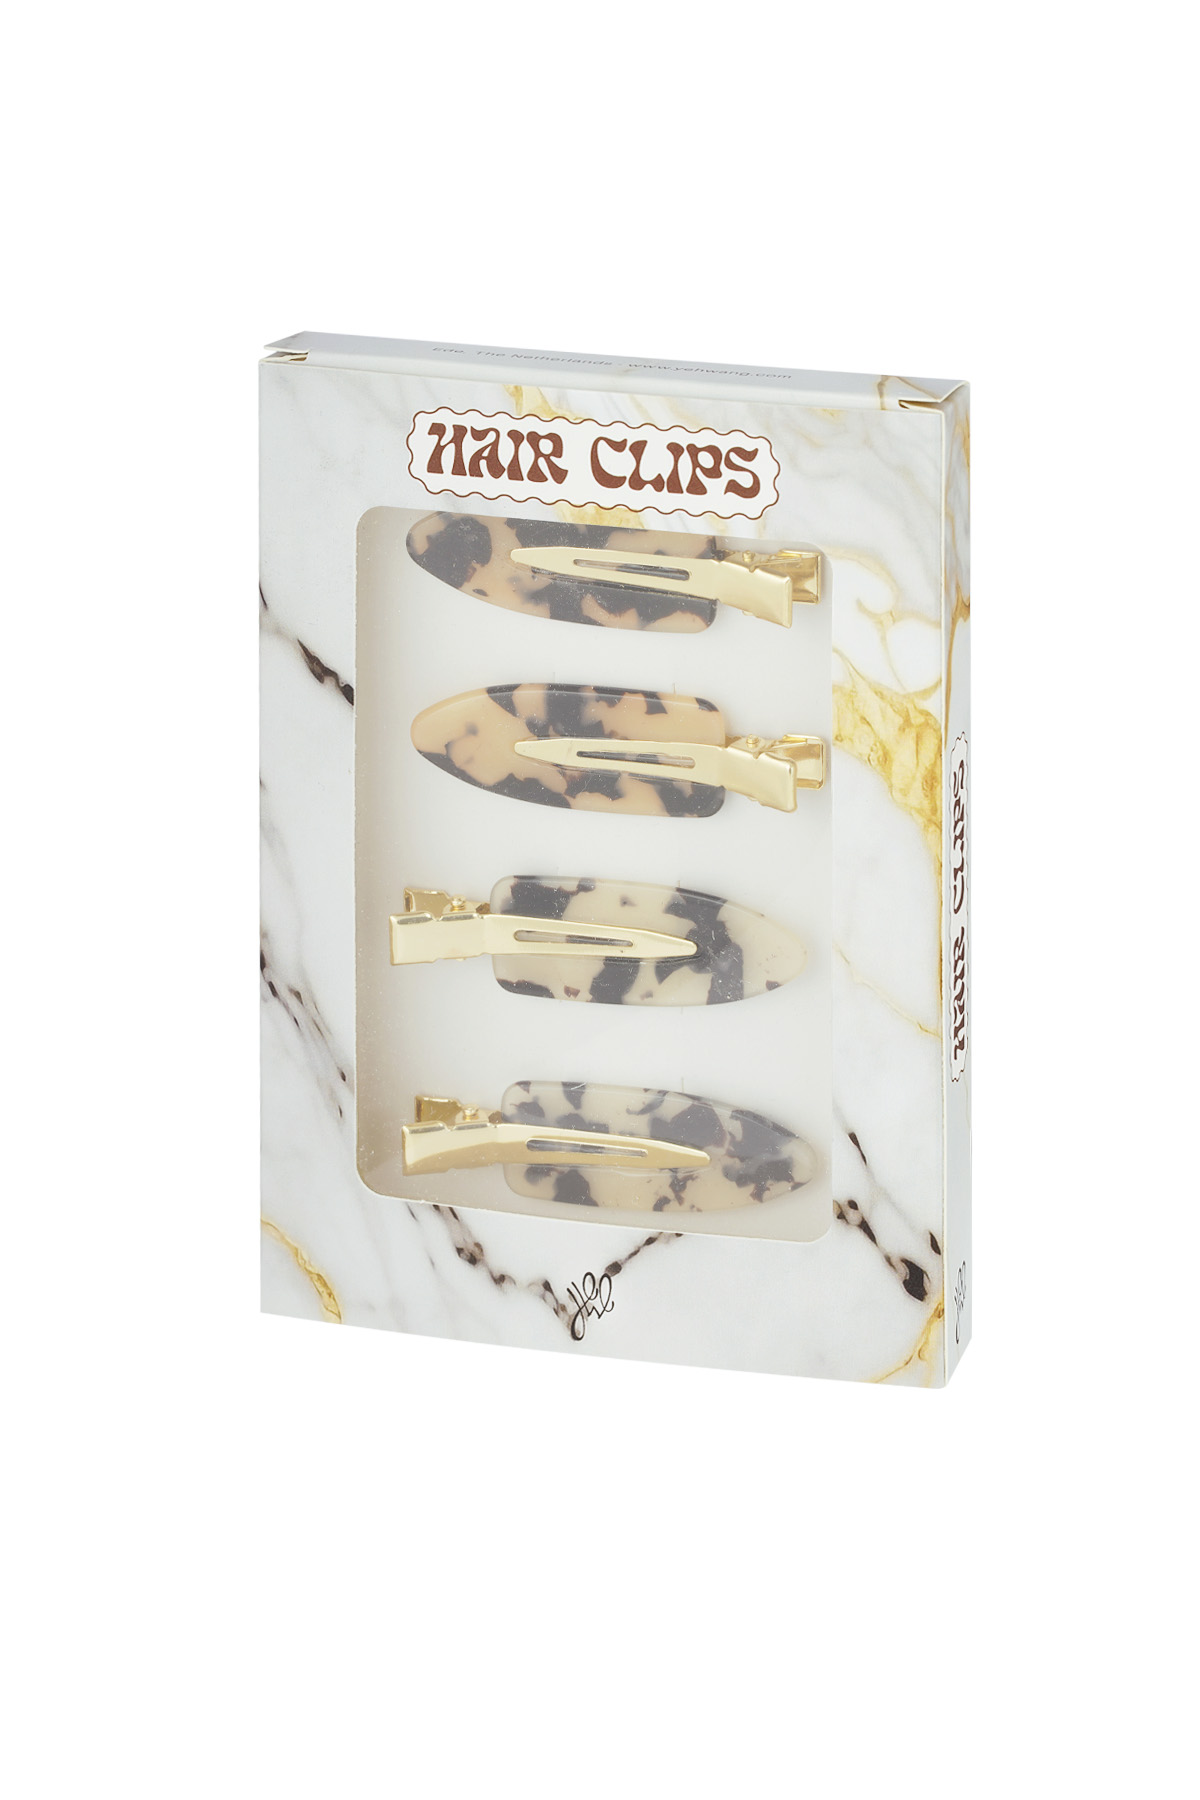 Hair clip box marble chic - brown